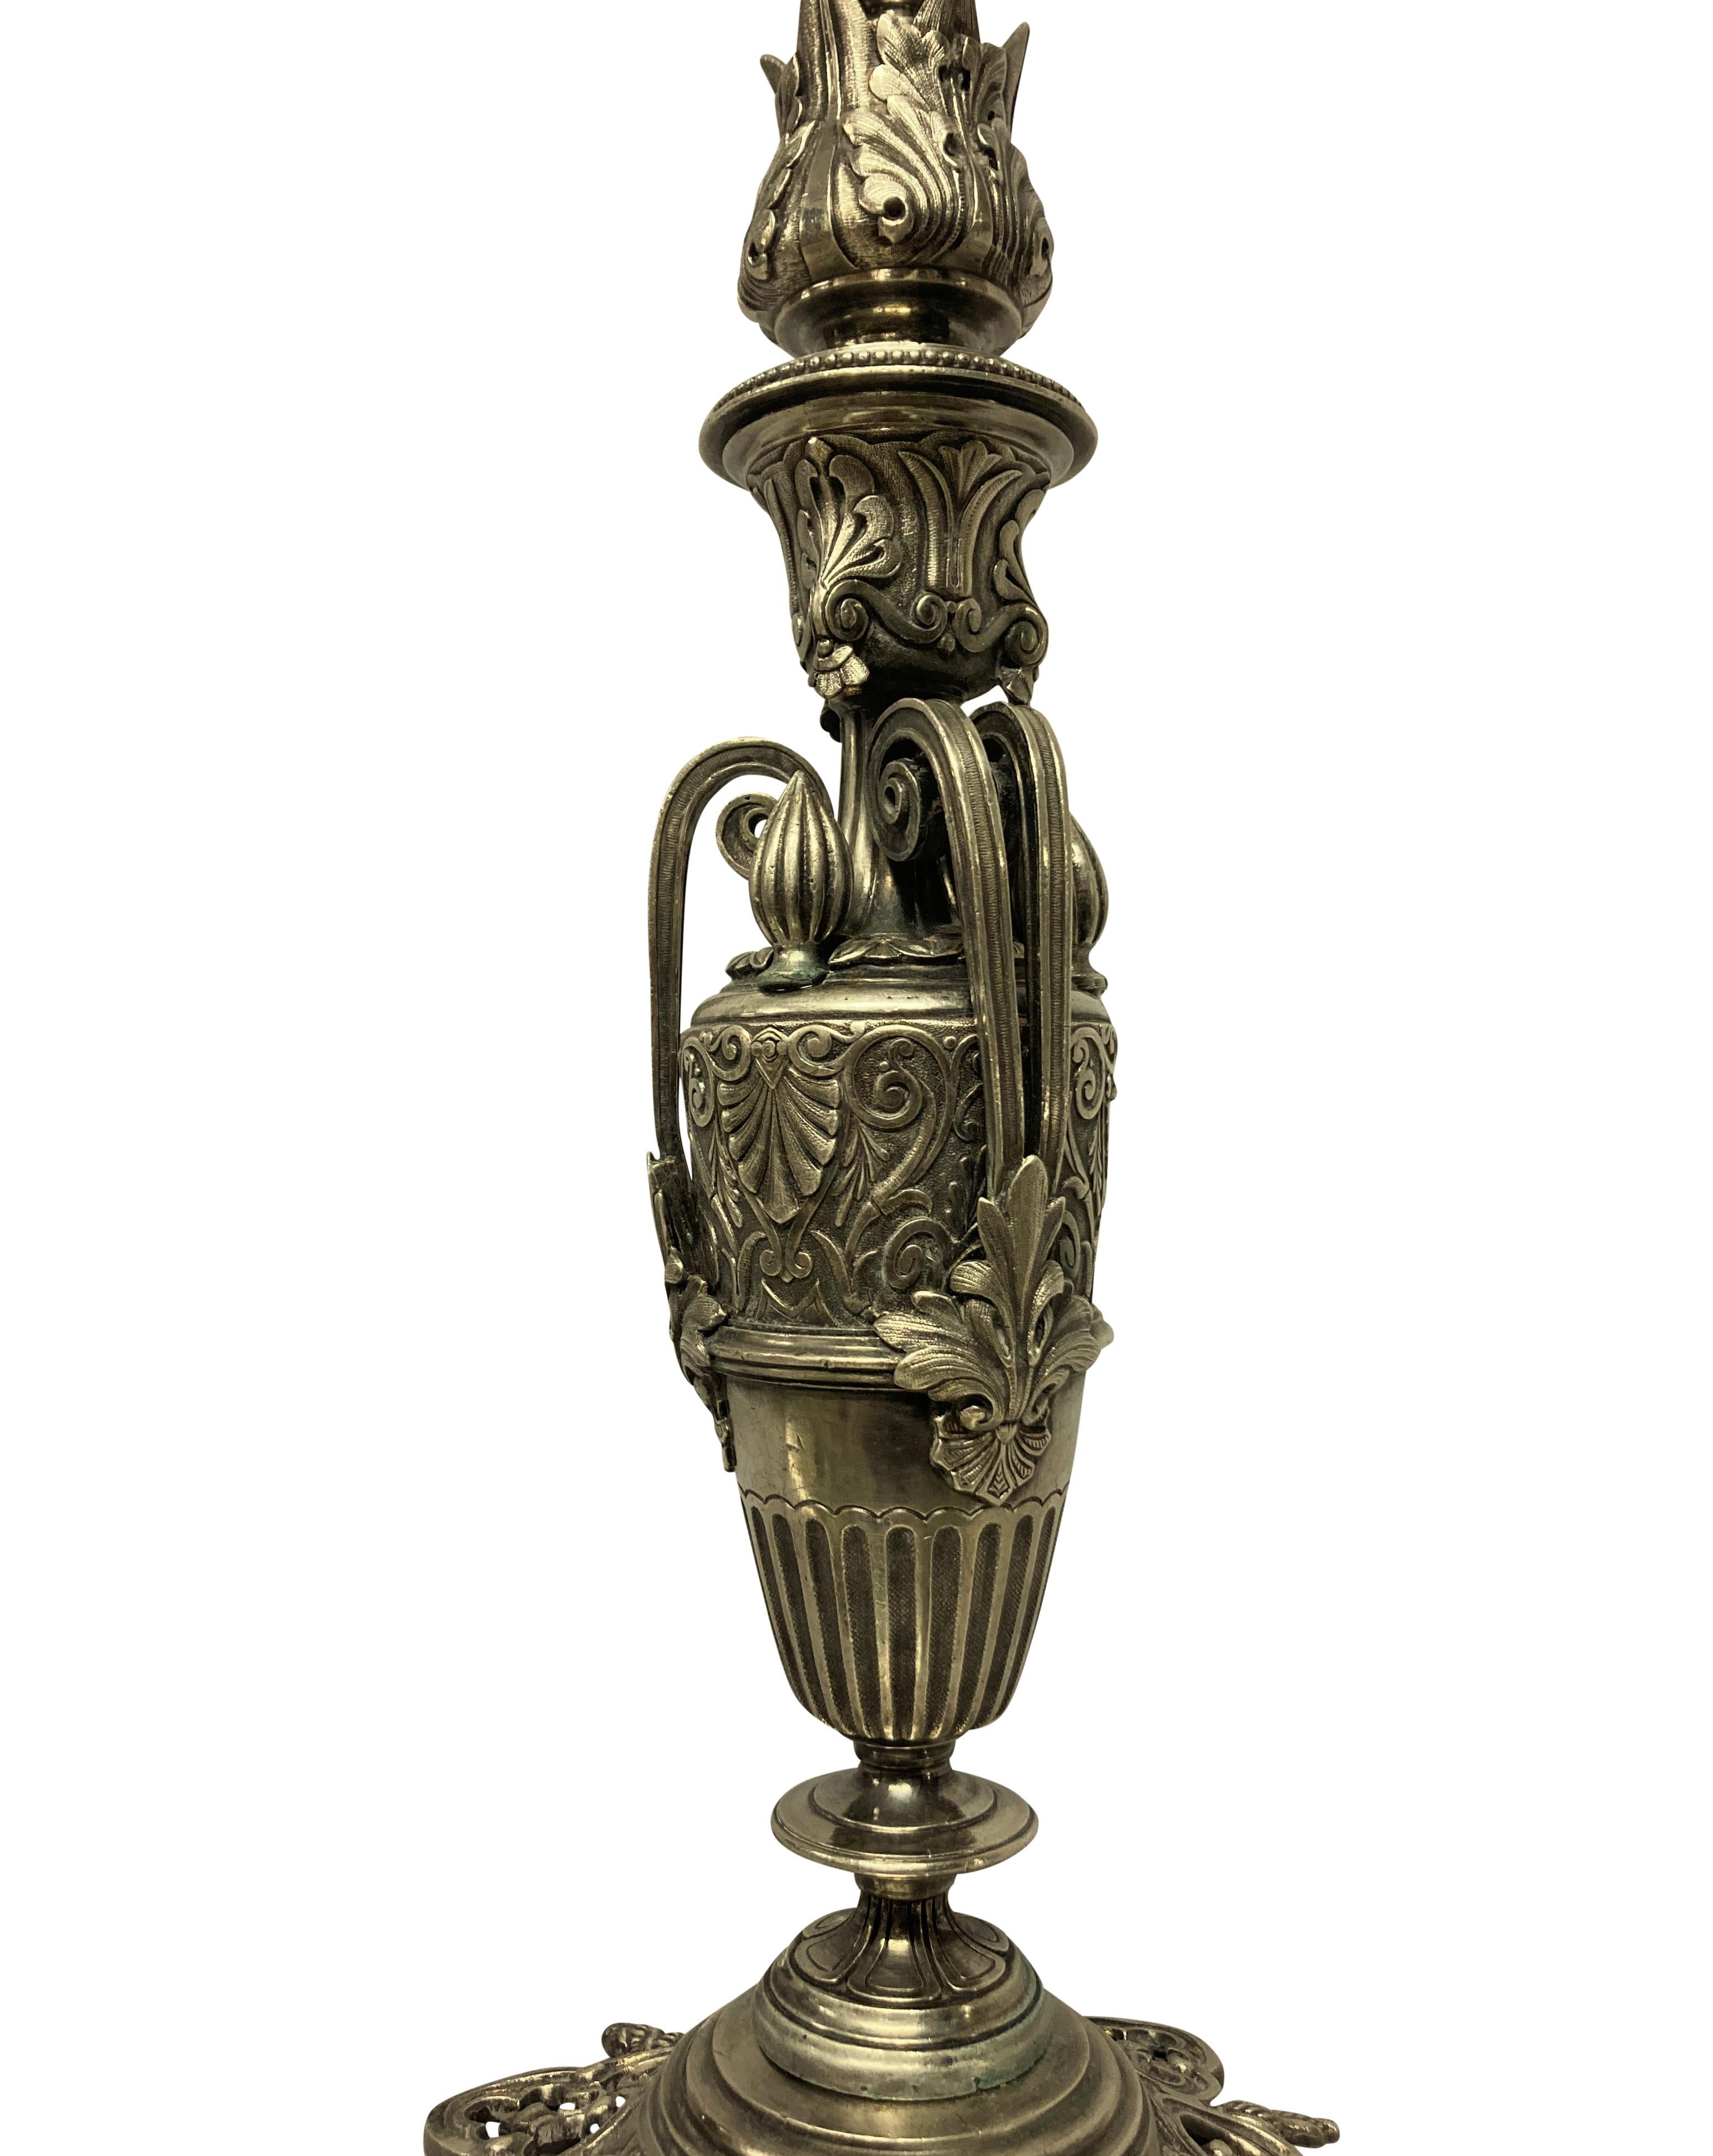 Une lampe de table française Art-Nouveau en métal argenté avec des éléments néo-classiques.